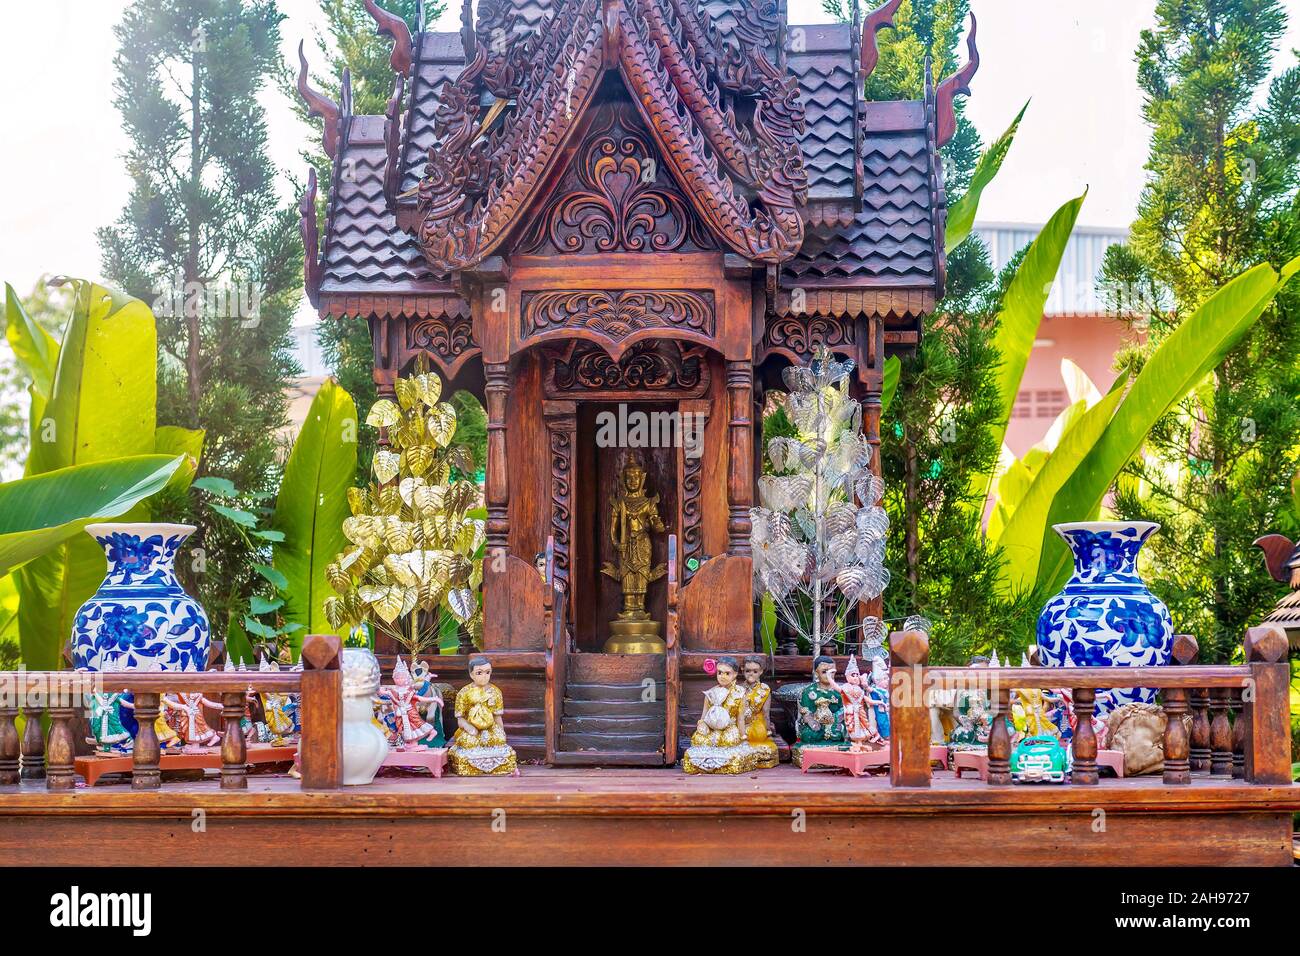 Un Thaï spirit house, une petite réplique d'une structure traditionnelle, où la divinité ou de l'établissement gardien spirituel vit et les offrandes sont faites. Banque D'Images